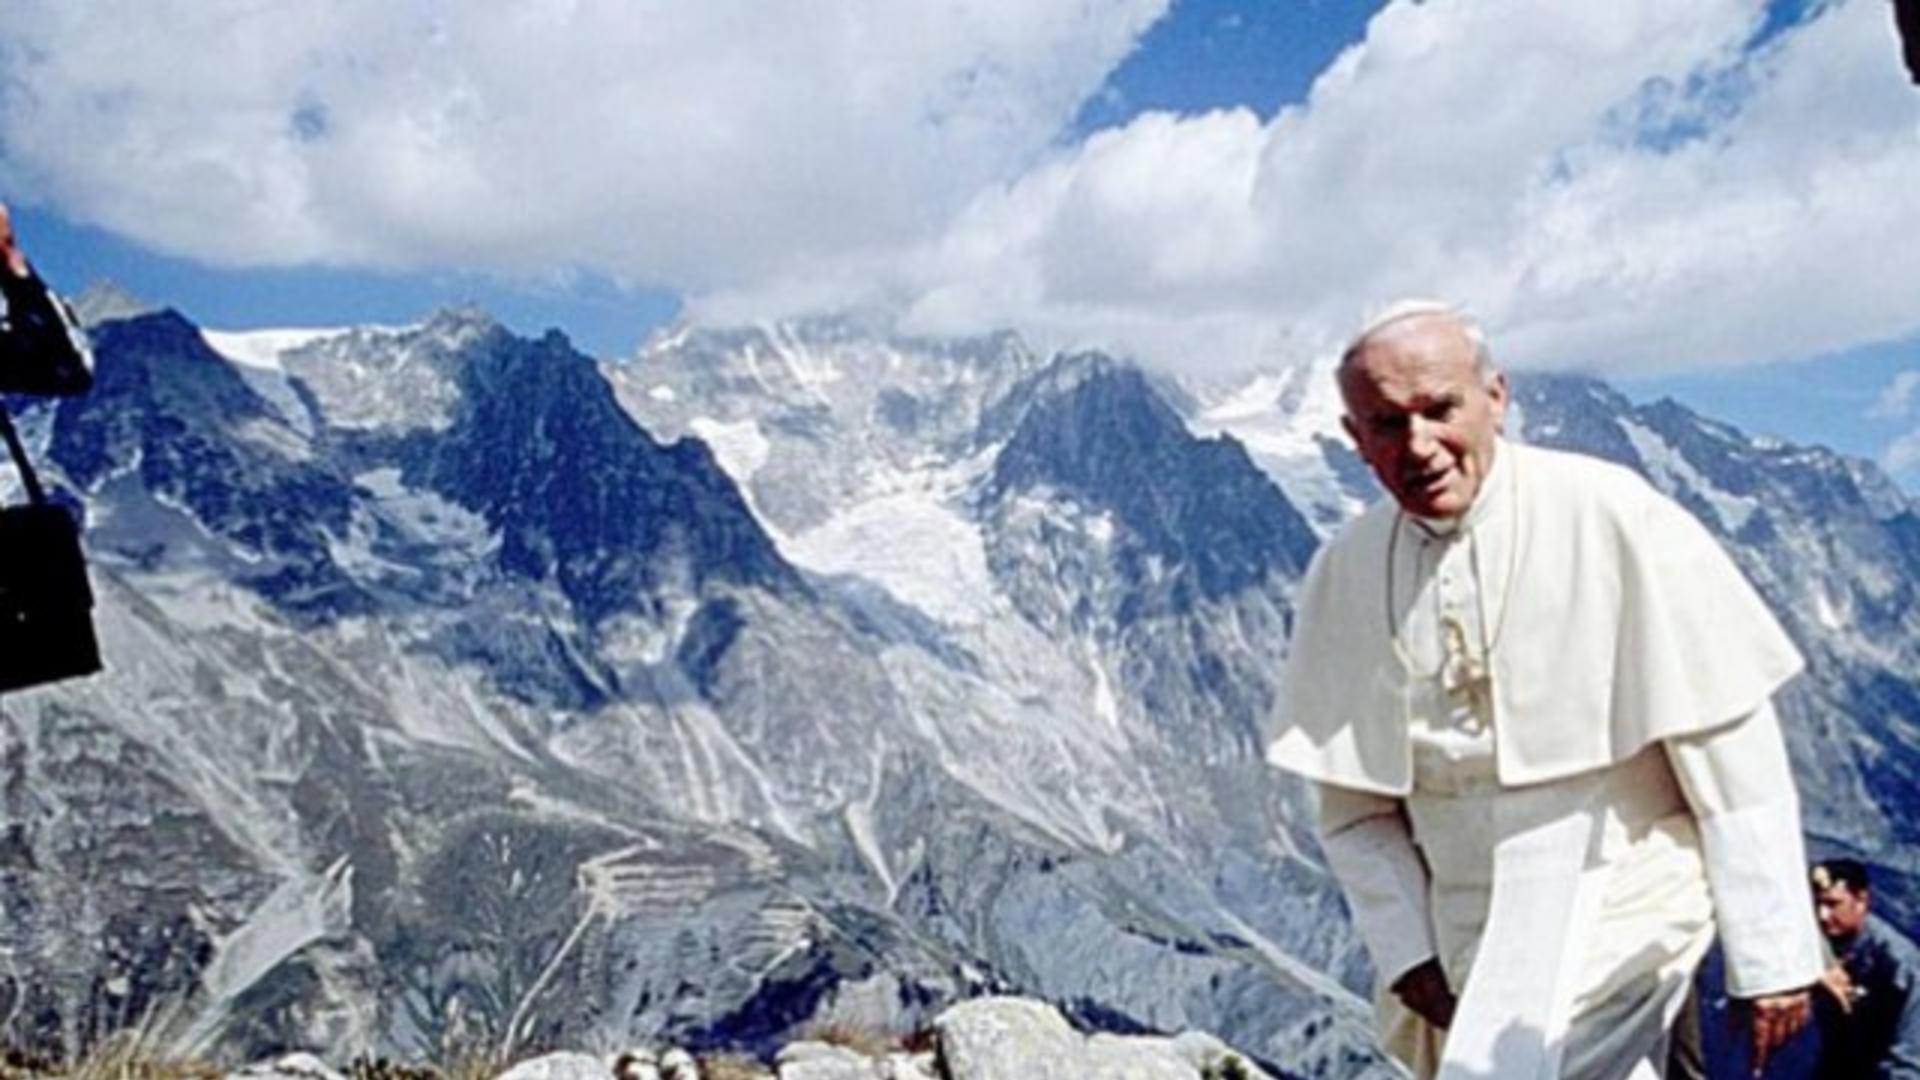 22 жовтня — день літургійного спомину святого Івана Павла II, Папи Римського